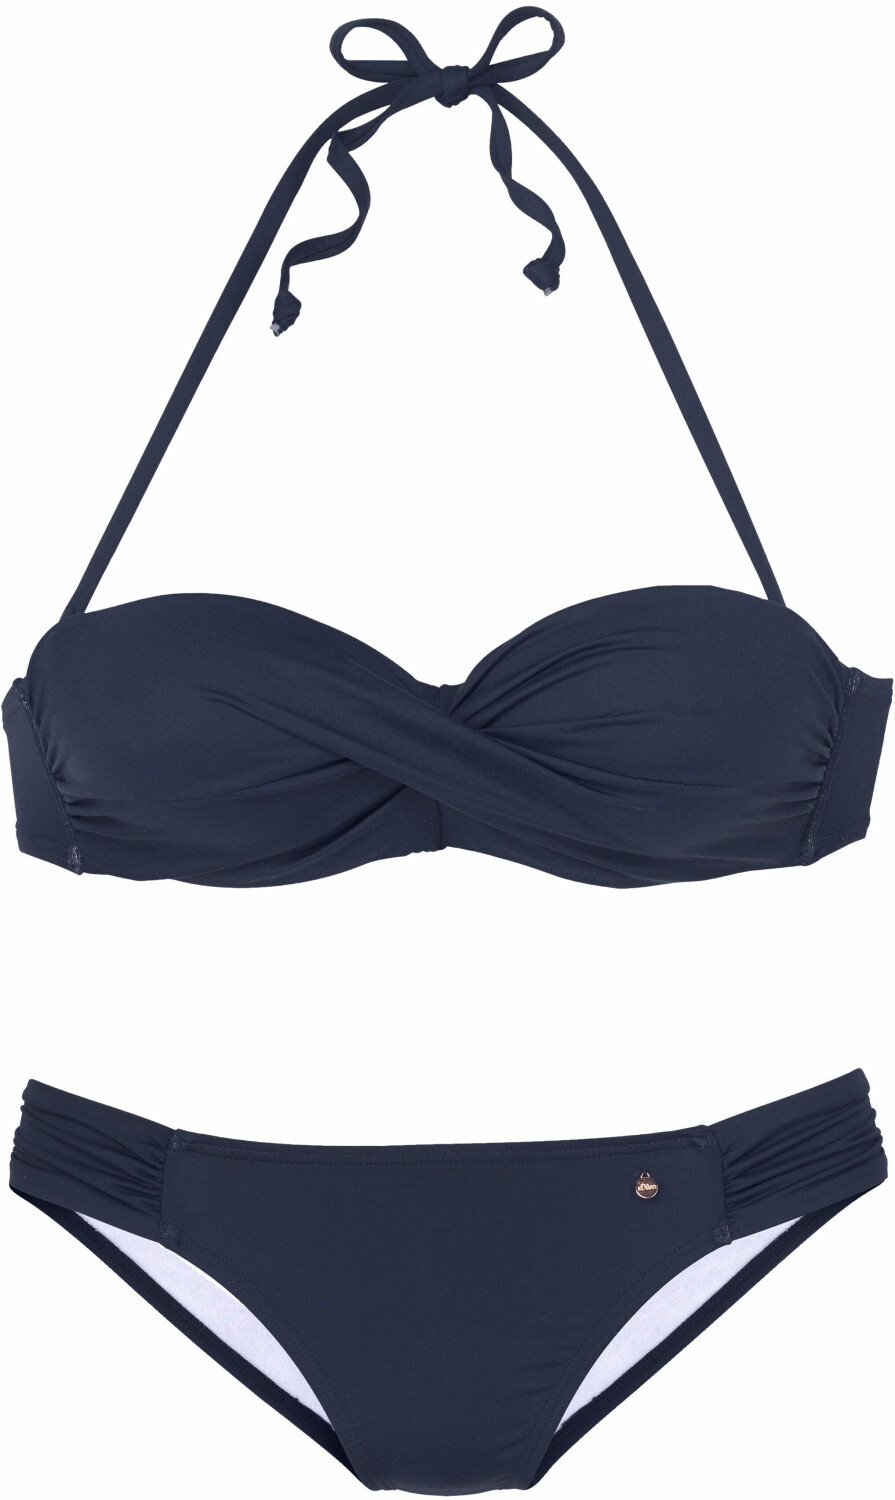 S.Oliver Bügel-Bandeau-Bikini mit Raffung (6002834) marine ab 64,99 € |  Preisvergleich bei